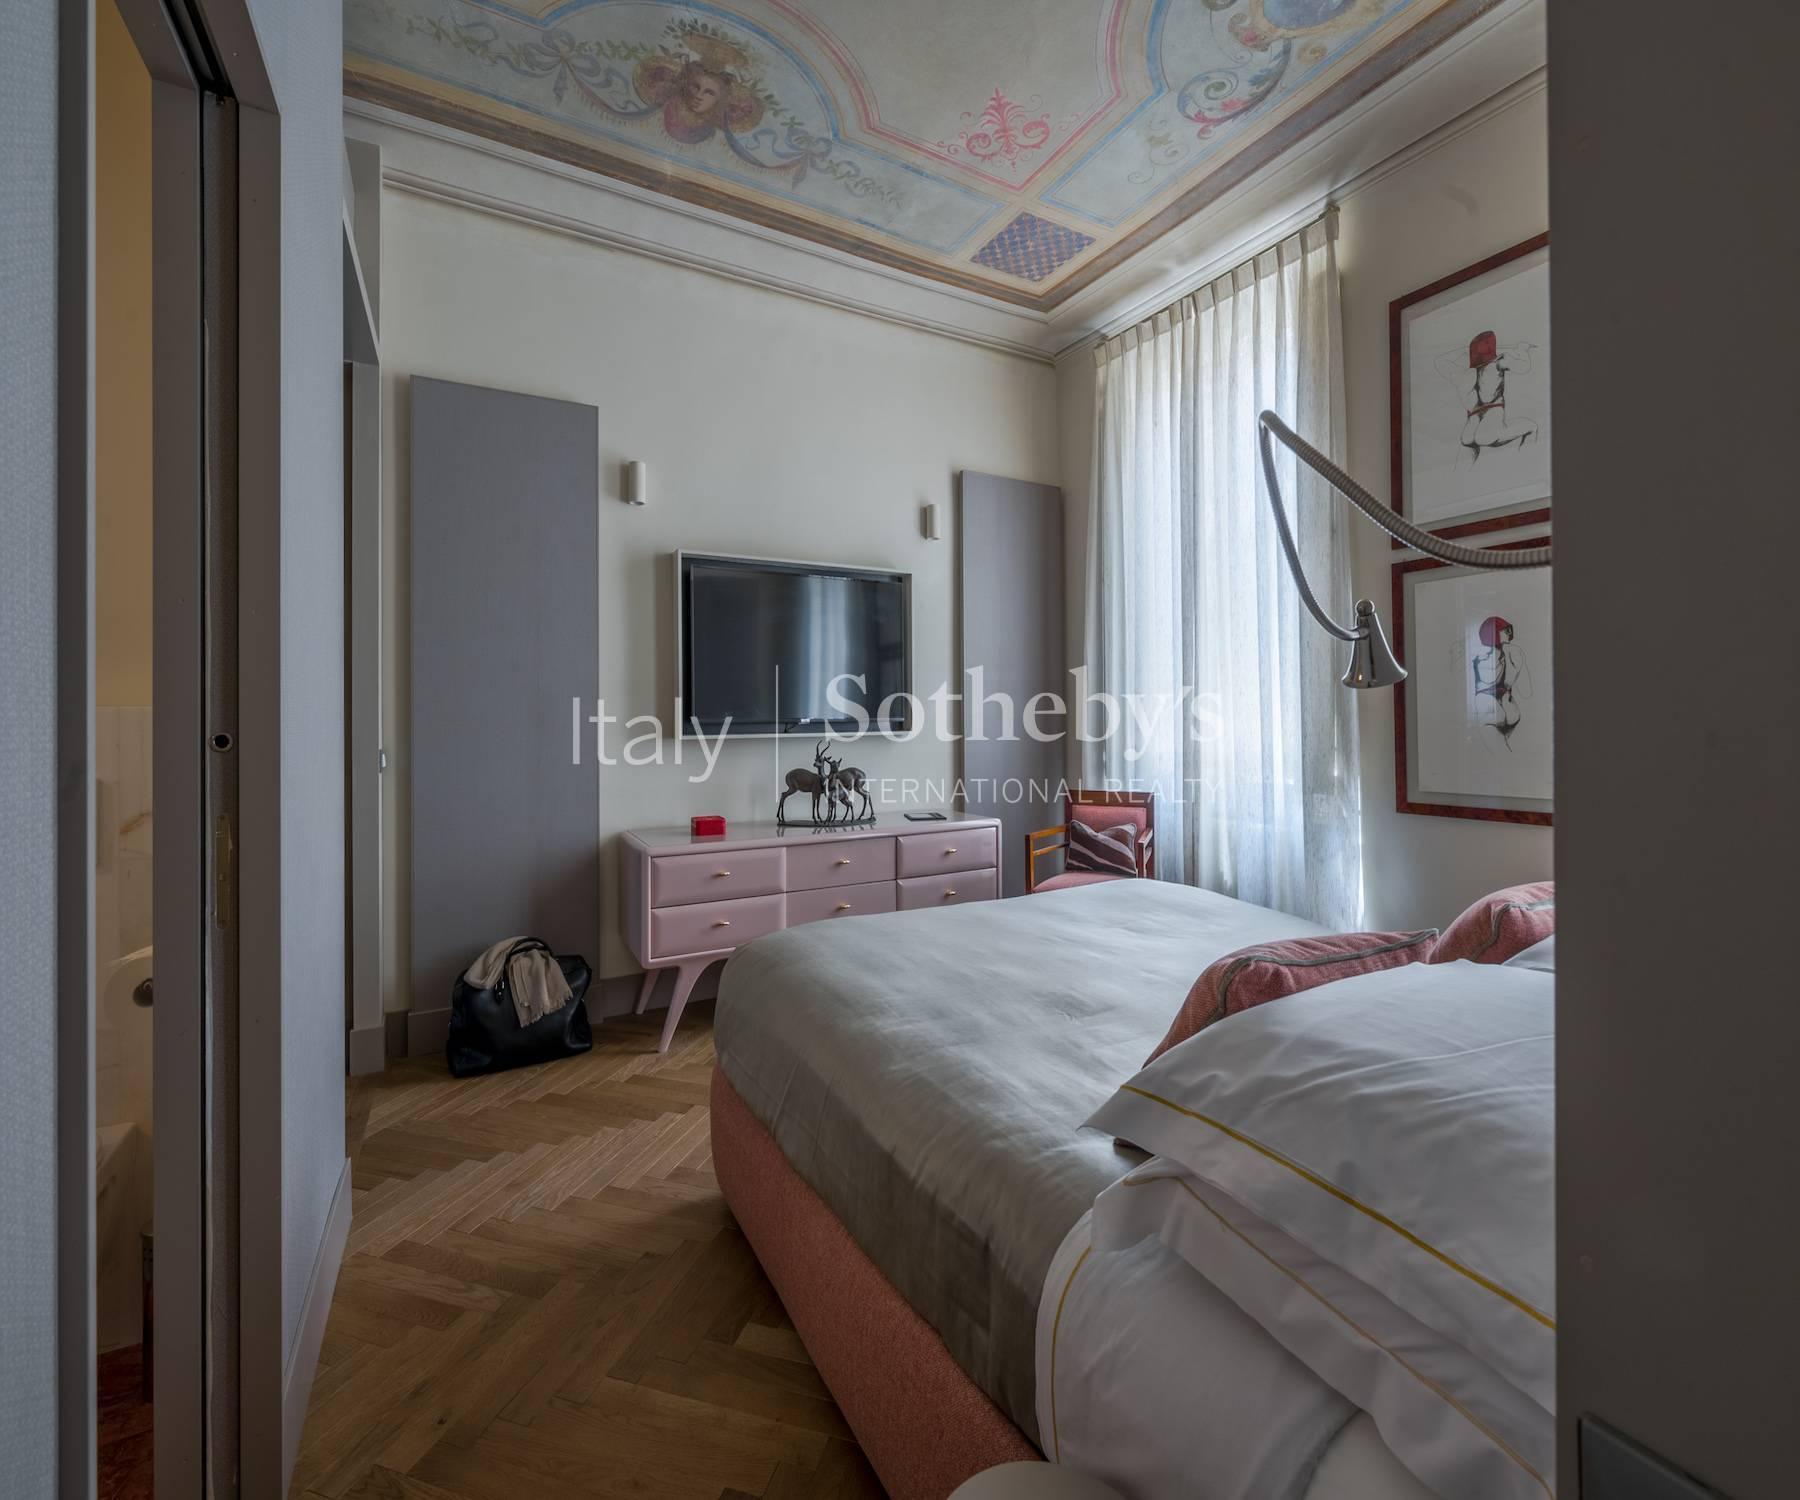 Delizioso appartamento a pochi metri dal fiume Arno - 8